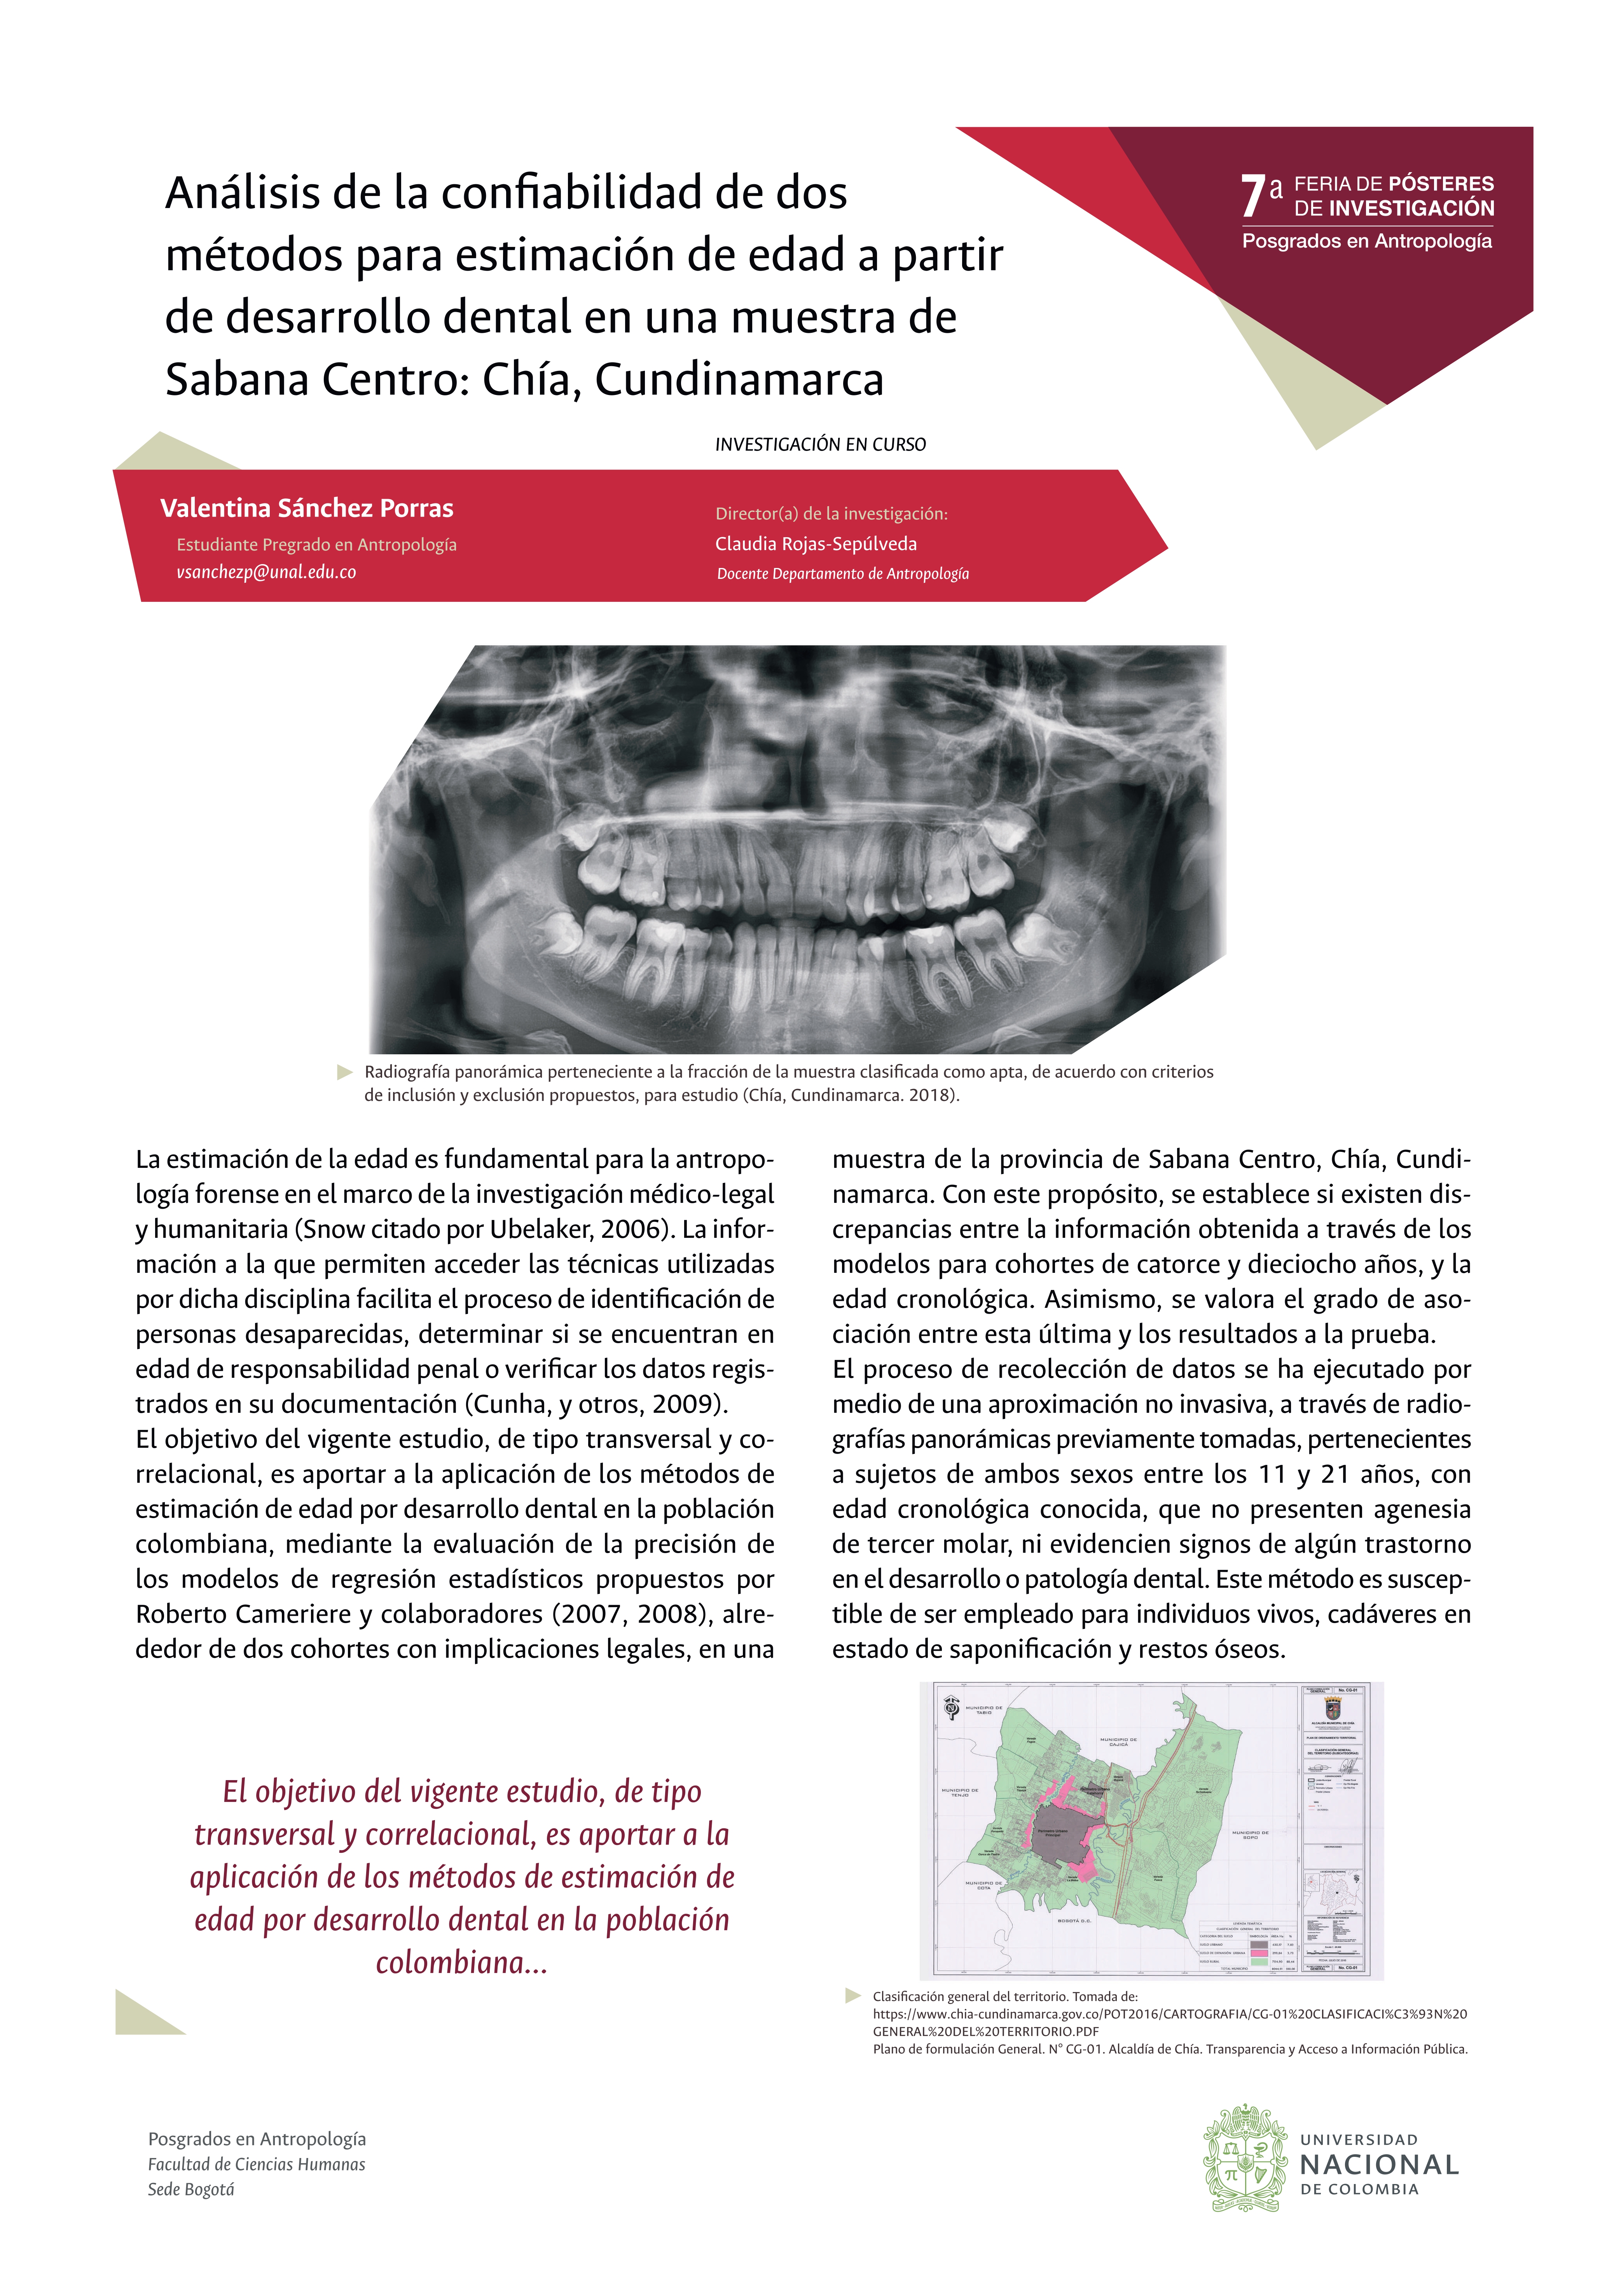 Análisis de la confiabilidad de dos métodos para estimación de la edad a partir del desarrollo dental en una muestra de Sabana Central, Chía